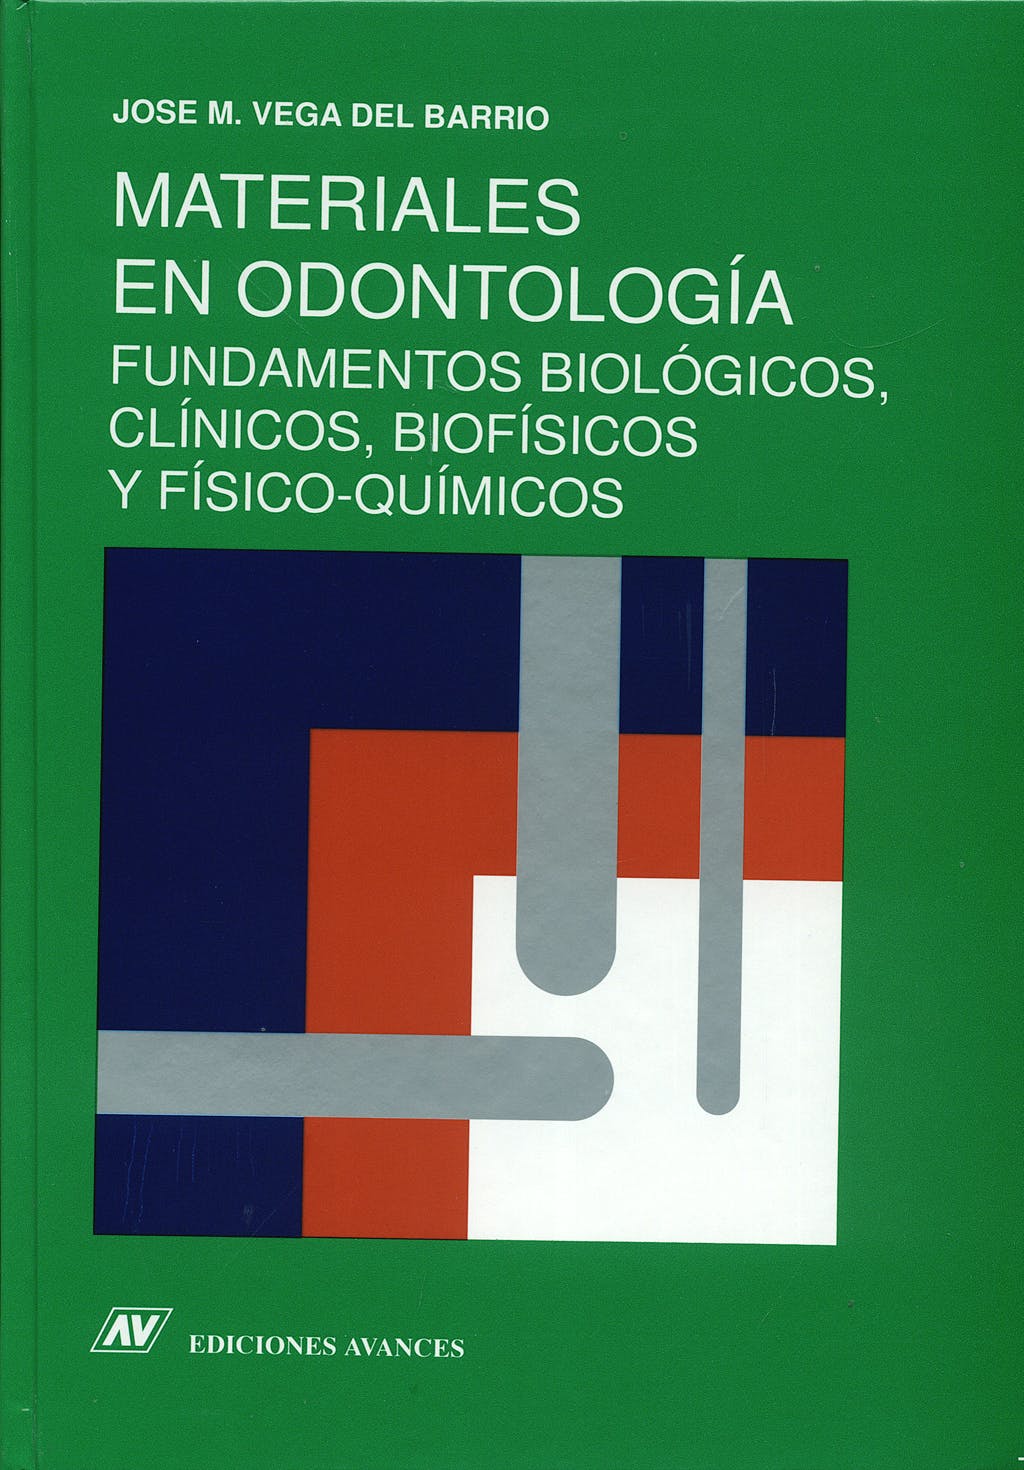 Imagen de portada del libro Materiales en odontología: